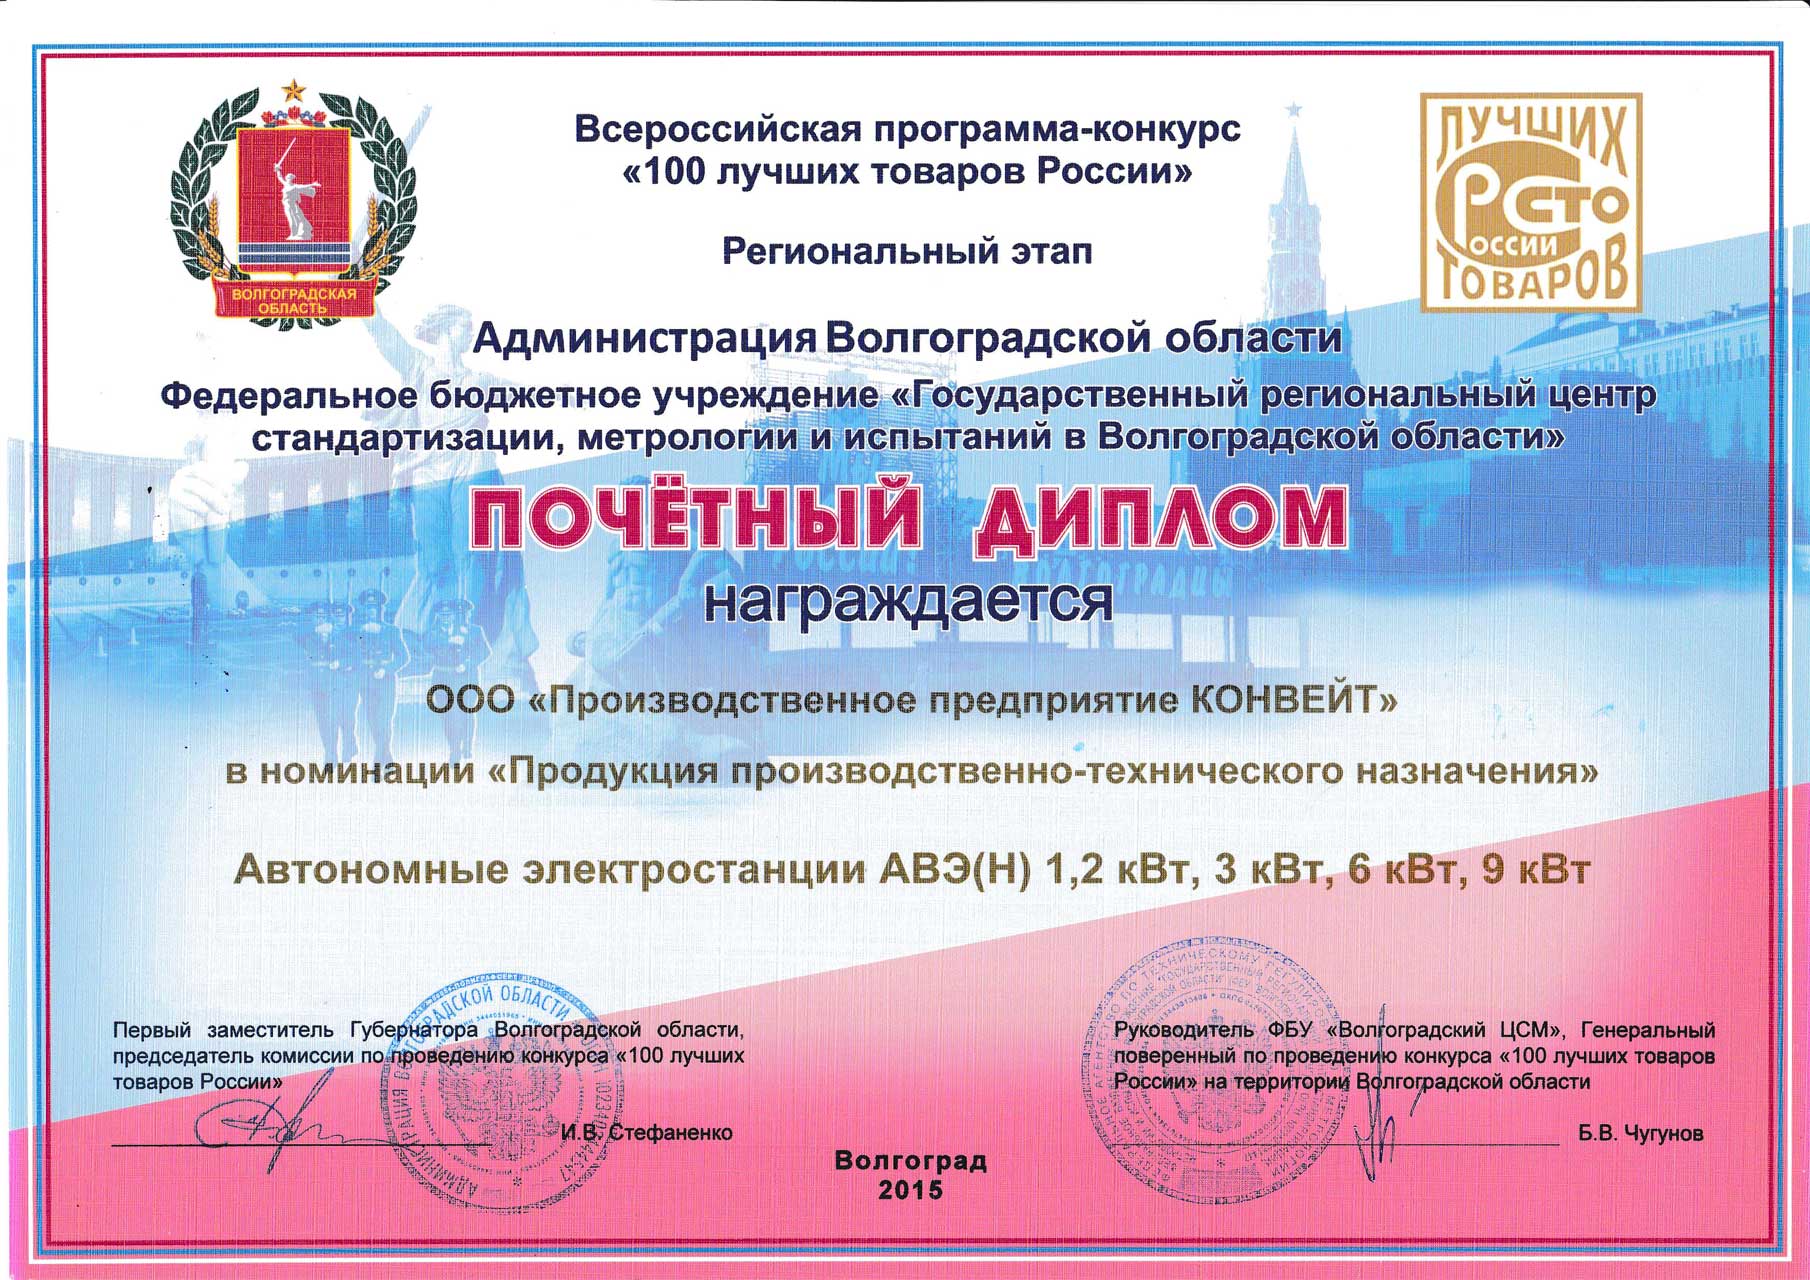 Почетный диплом Автономные электростанции АВЭ(Н), 2015 год